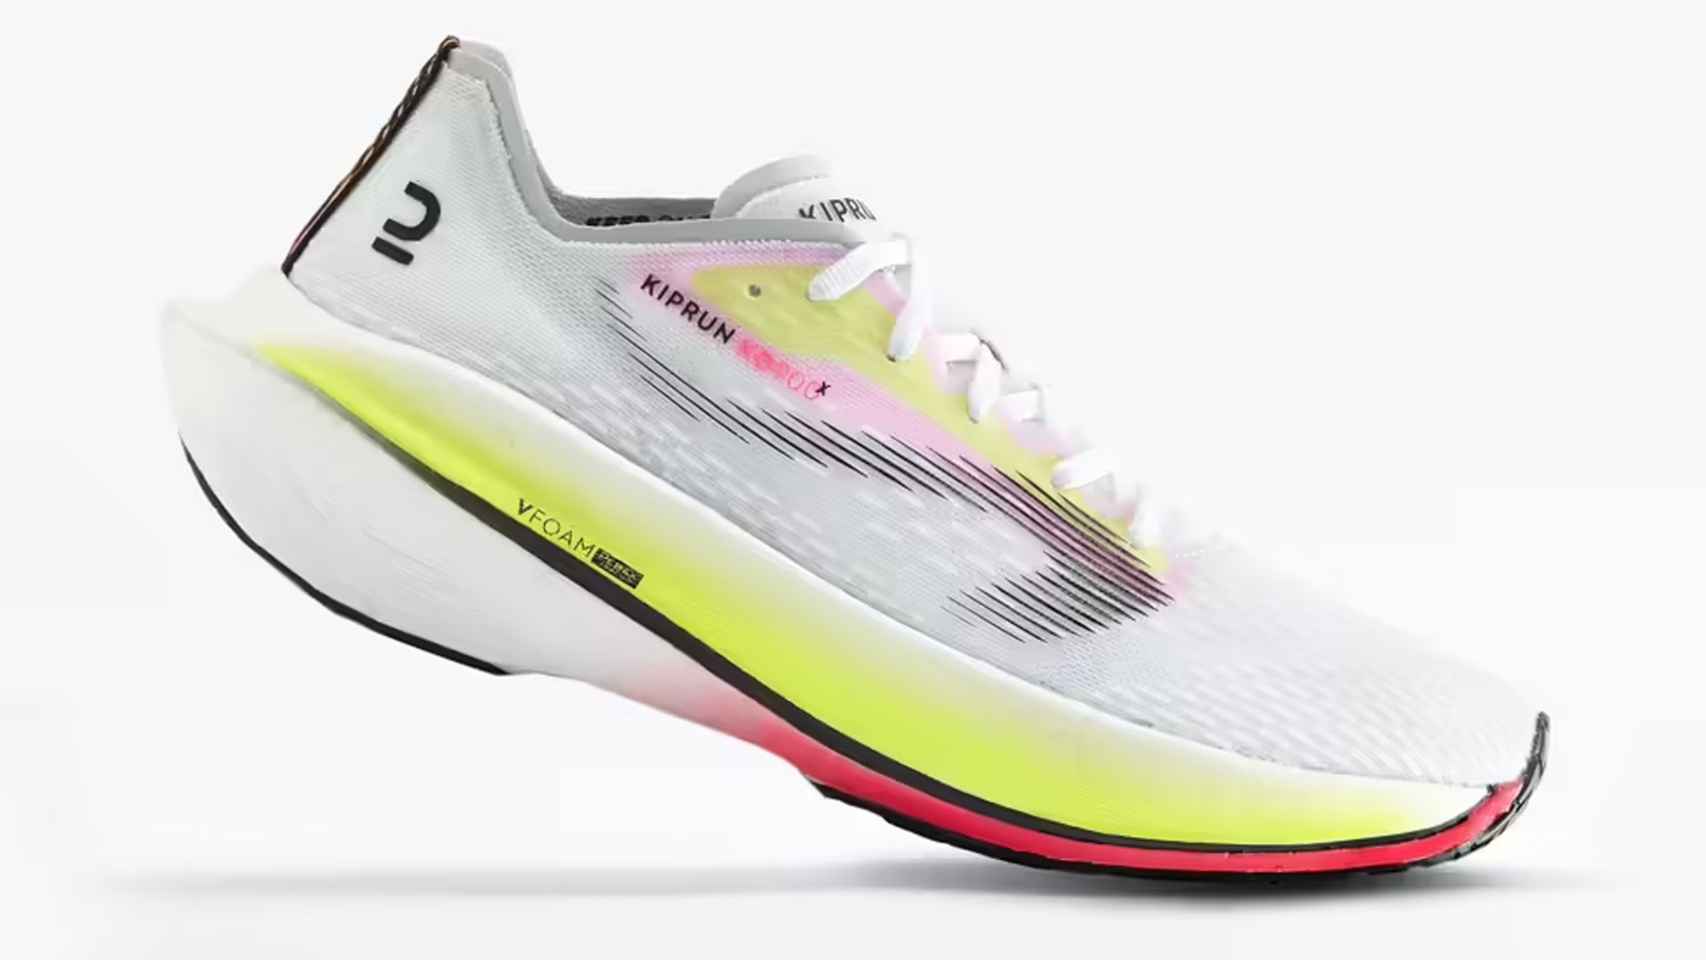 Las zapatillas de running para principiantes de Decathlon